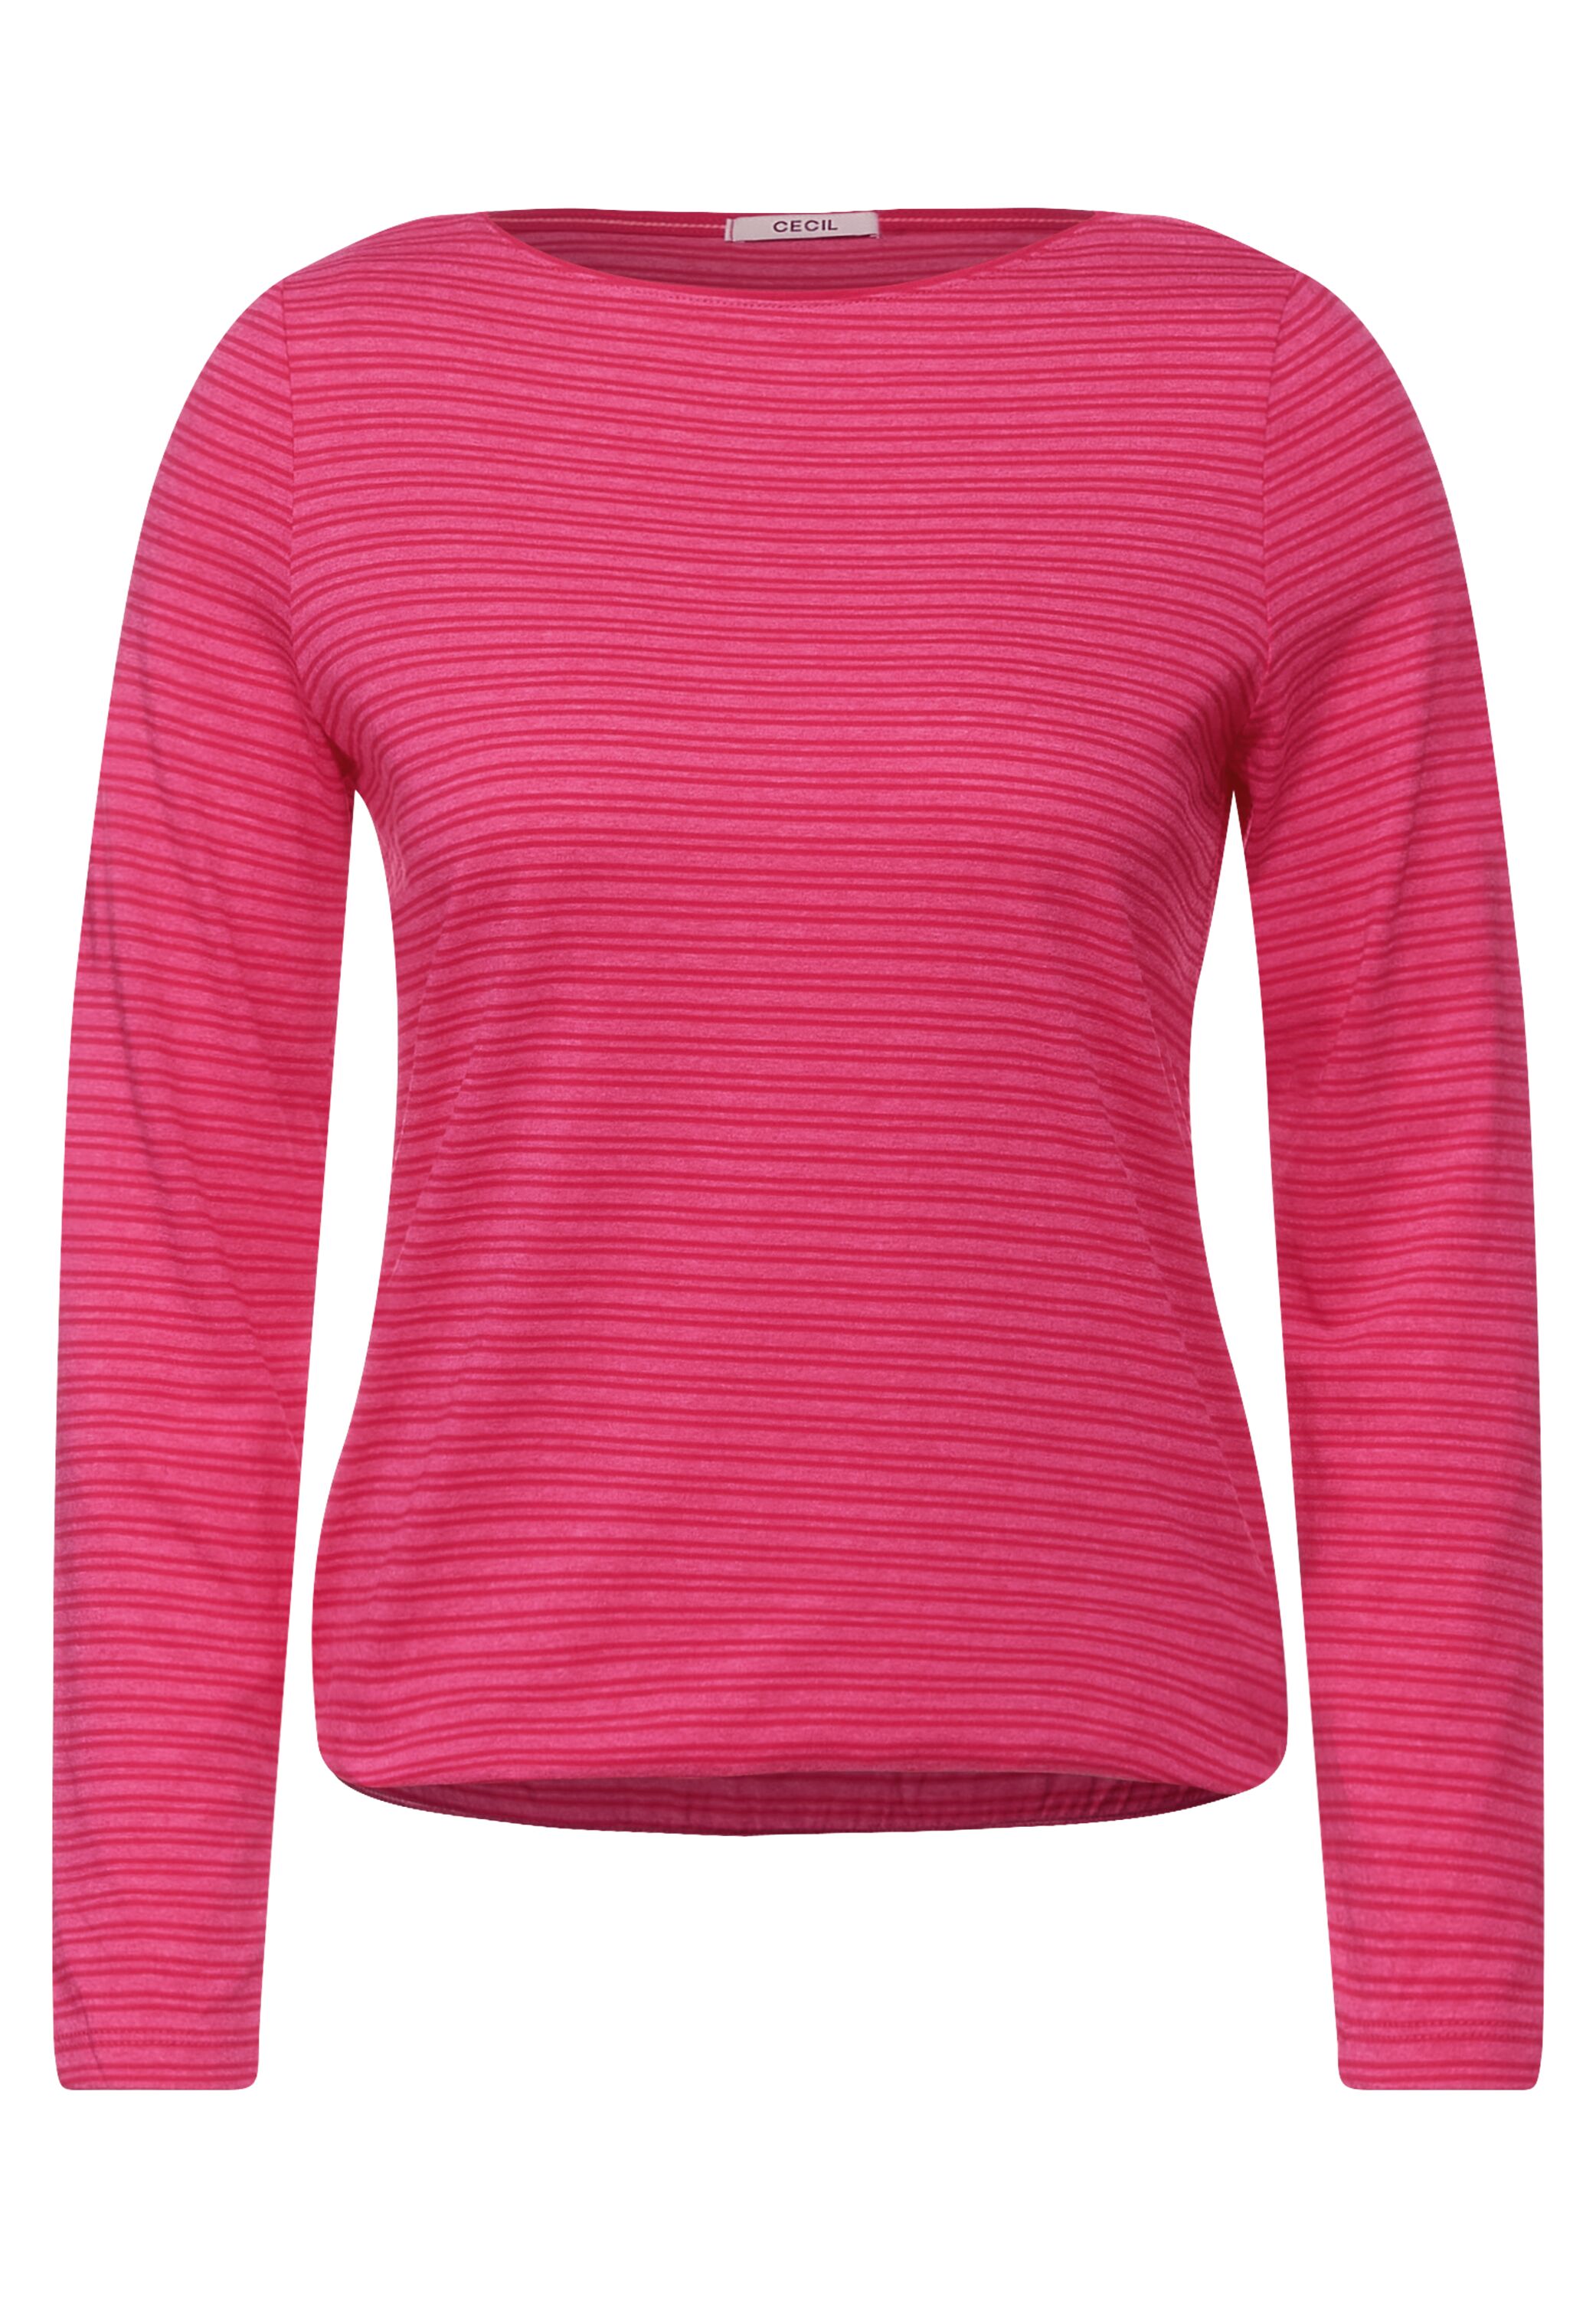 Shirt met gestreept patroon - dynamic pink melange